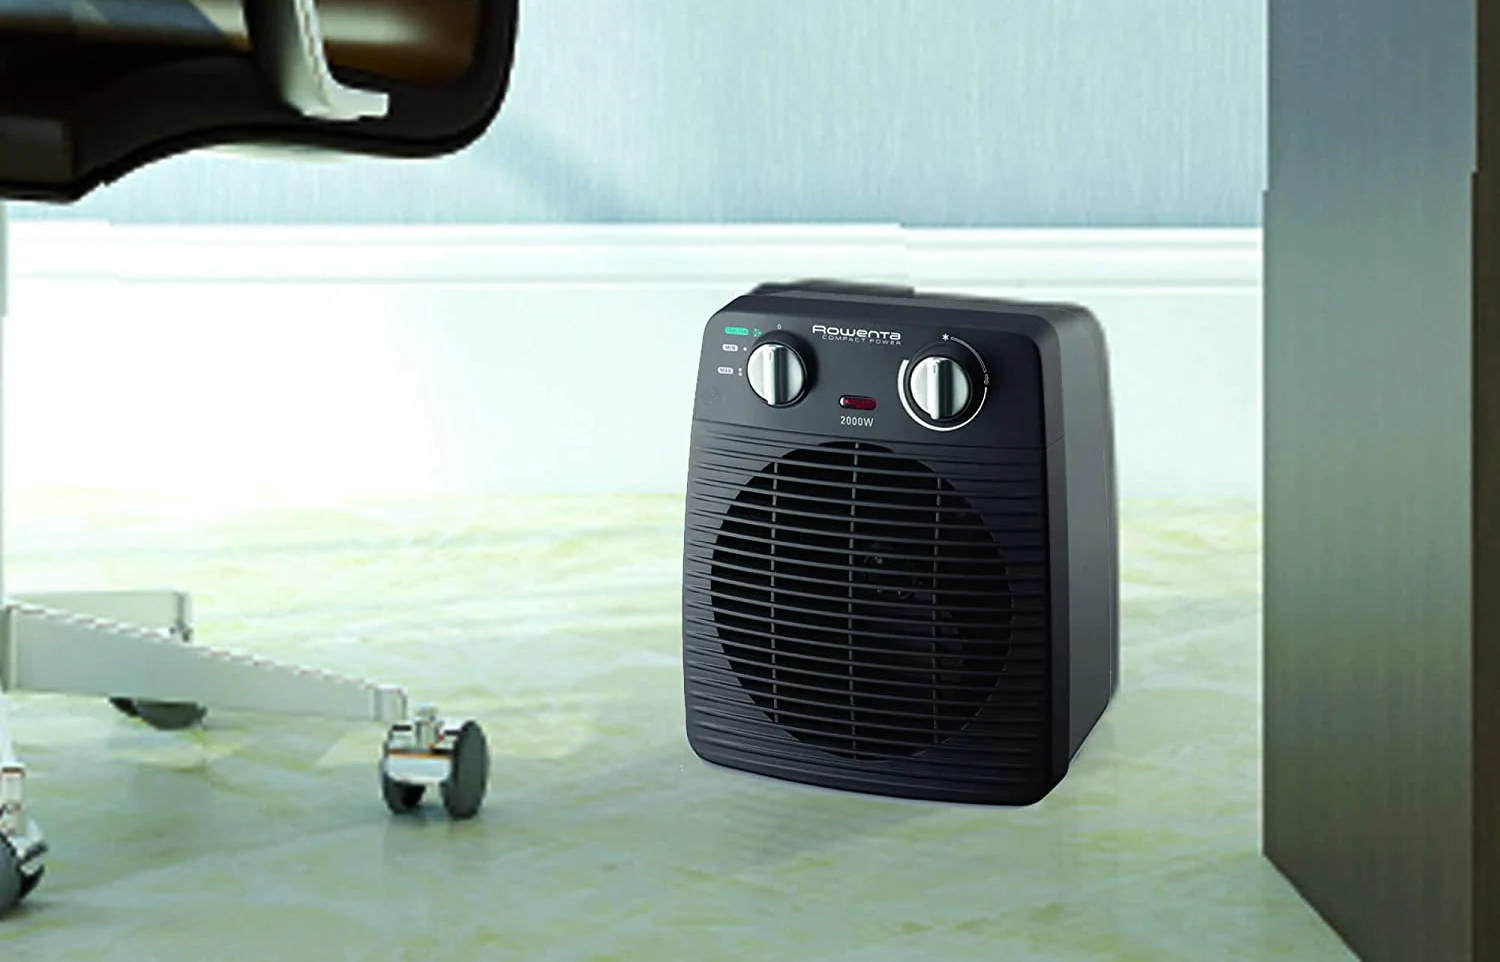 Los 8 mejores calefactores eléctricos de bajo consumo